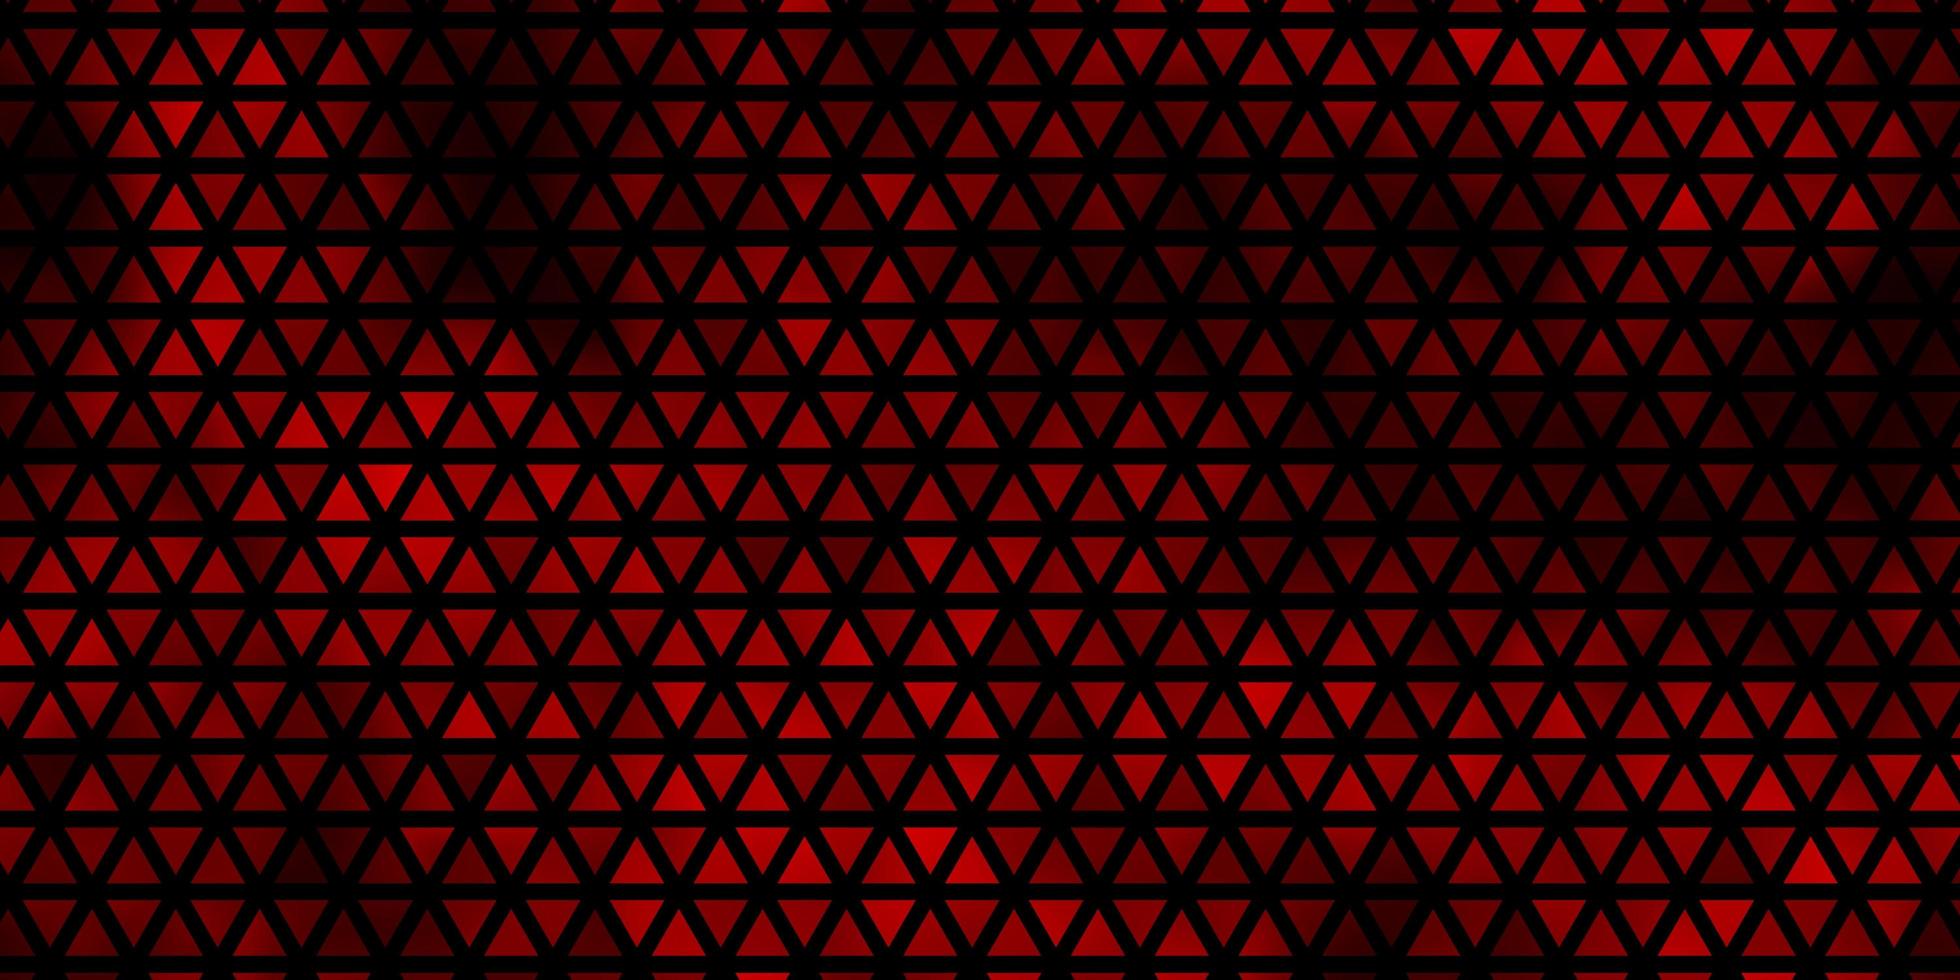 modèle vectoriel rouge foncé avec des cristaux, des triangles.